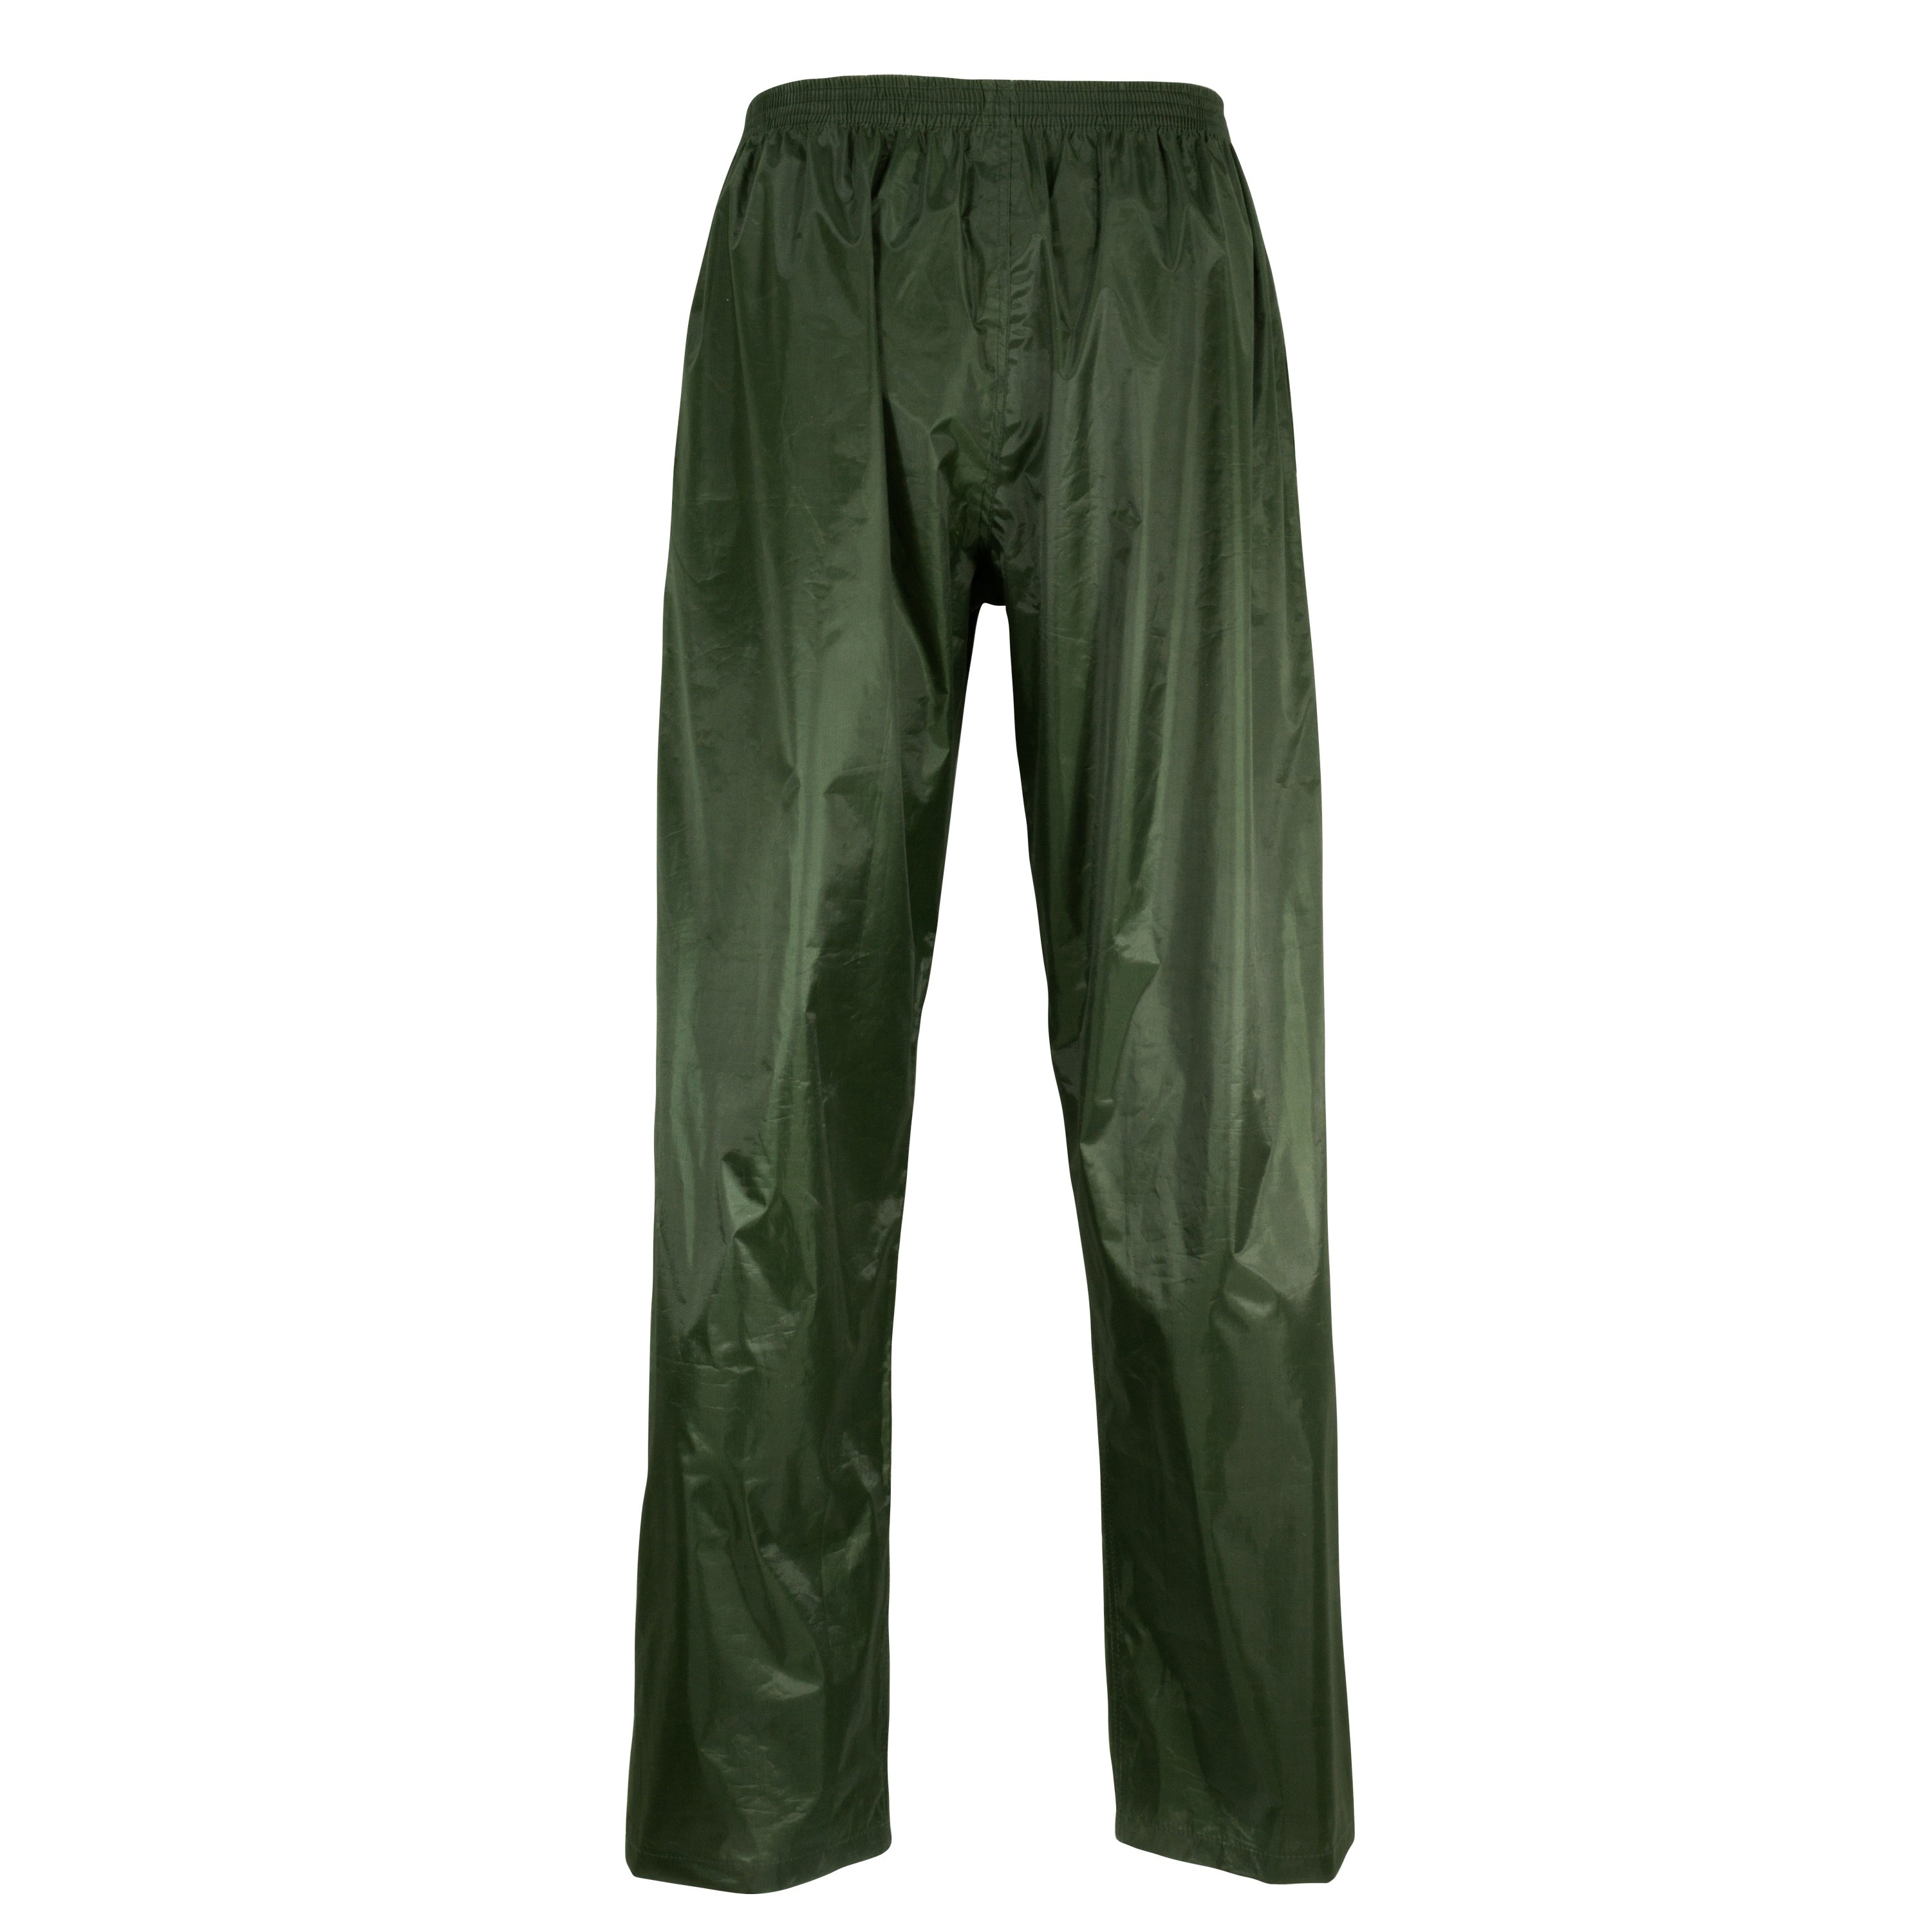 2 tones polyester rain suit jacket and pants - Men’s